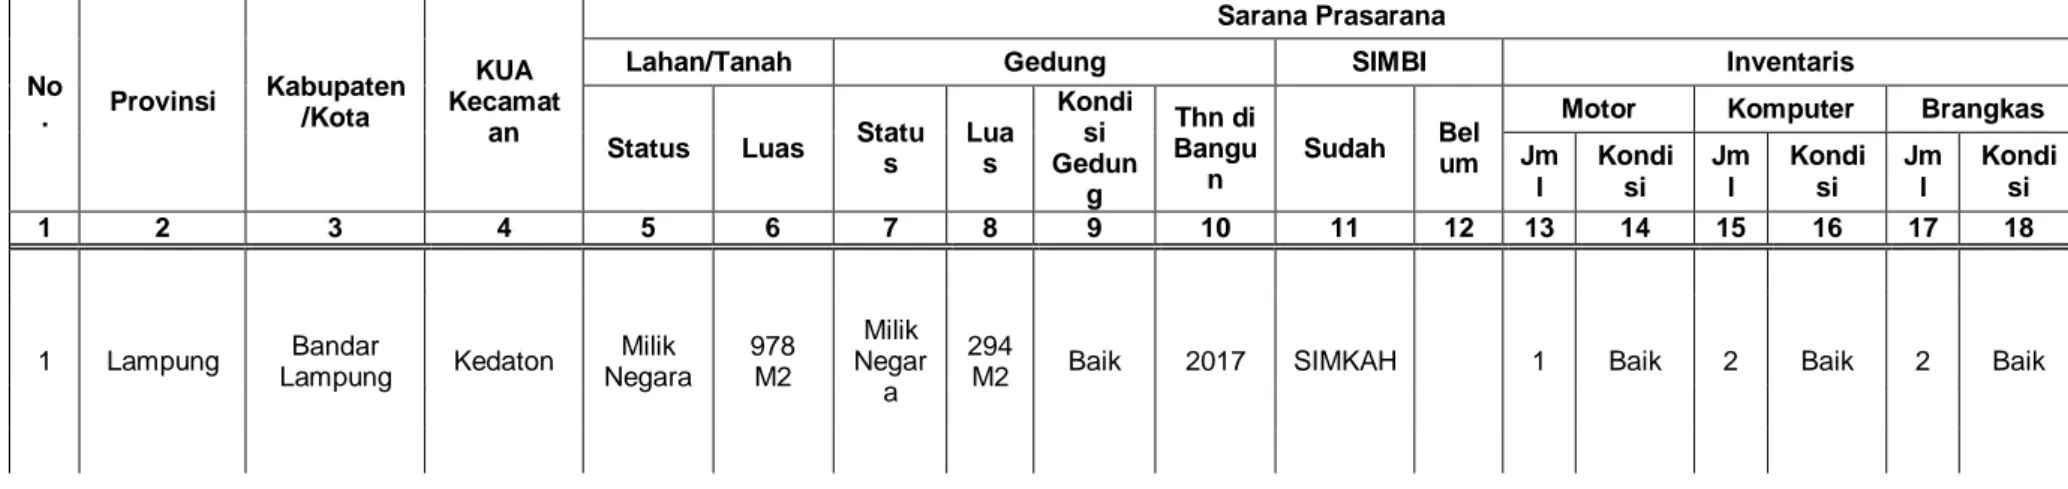 Tabel Sarana Prasarana KUA Kecamatan Kedaton 